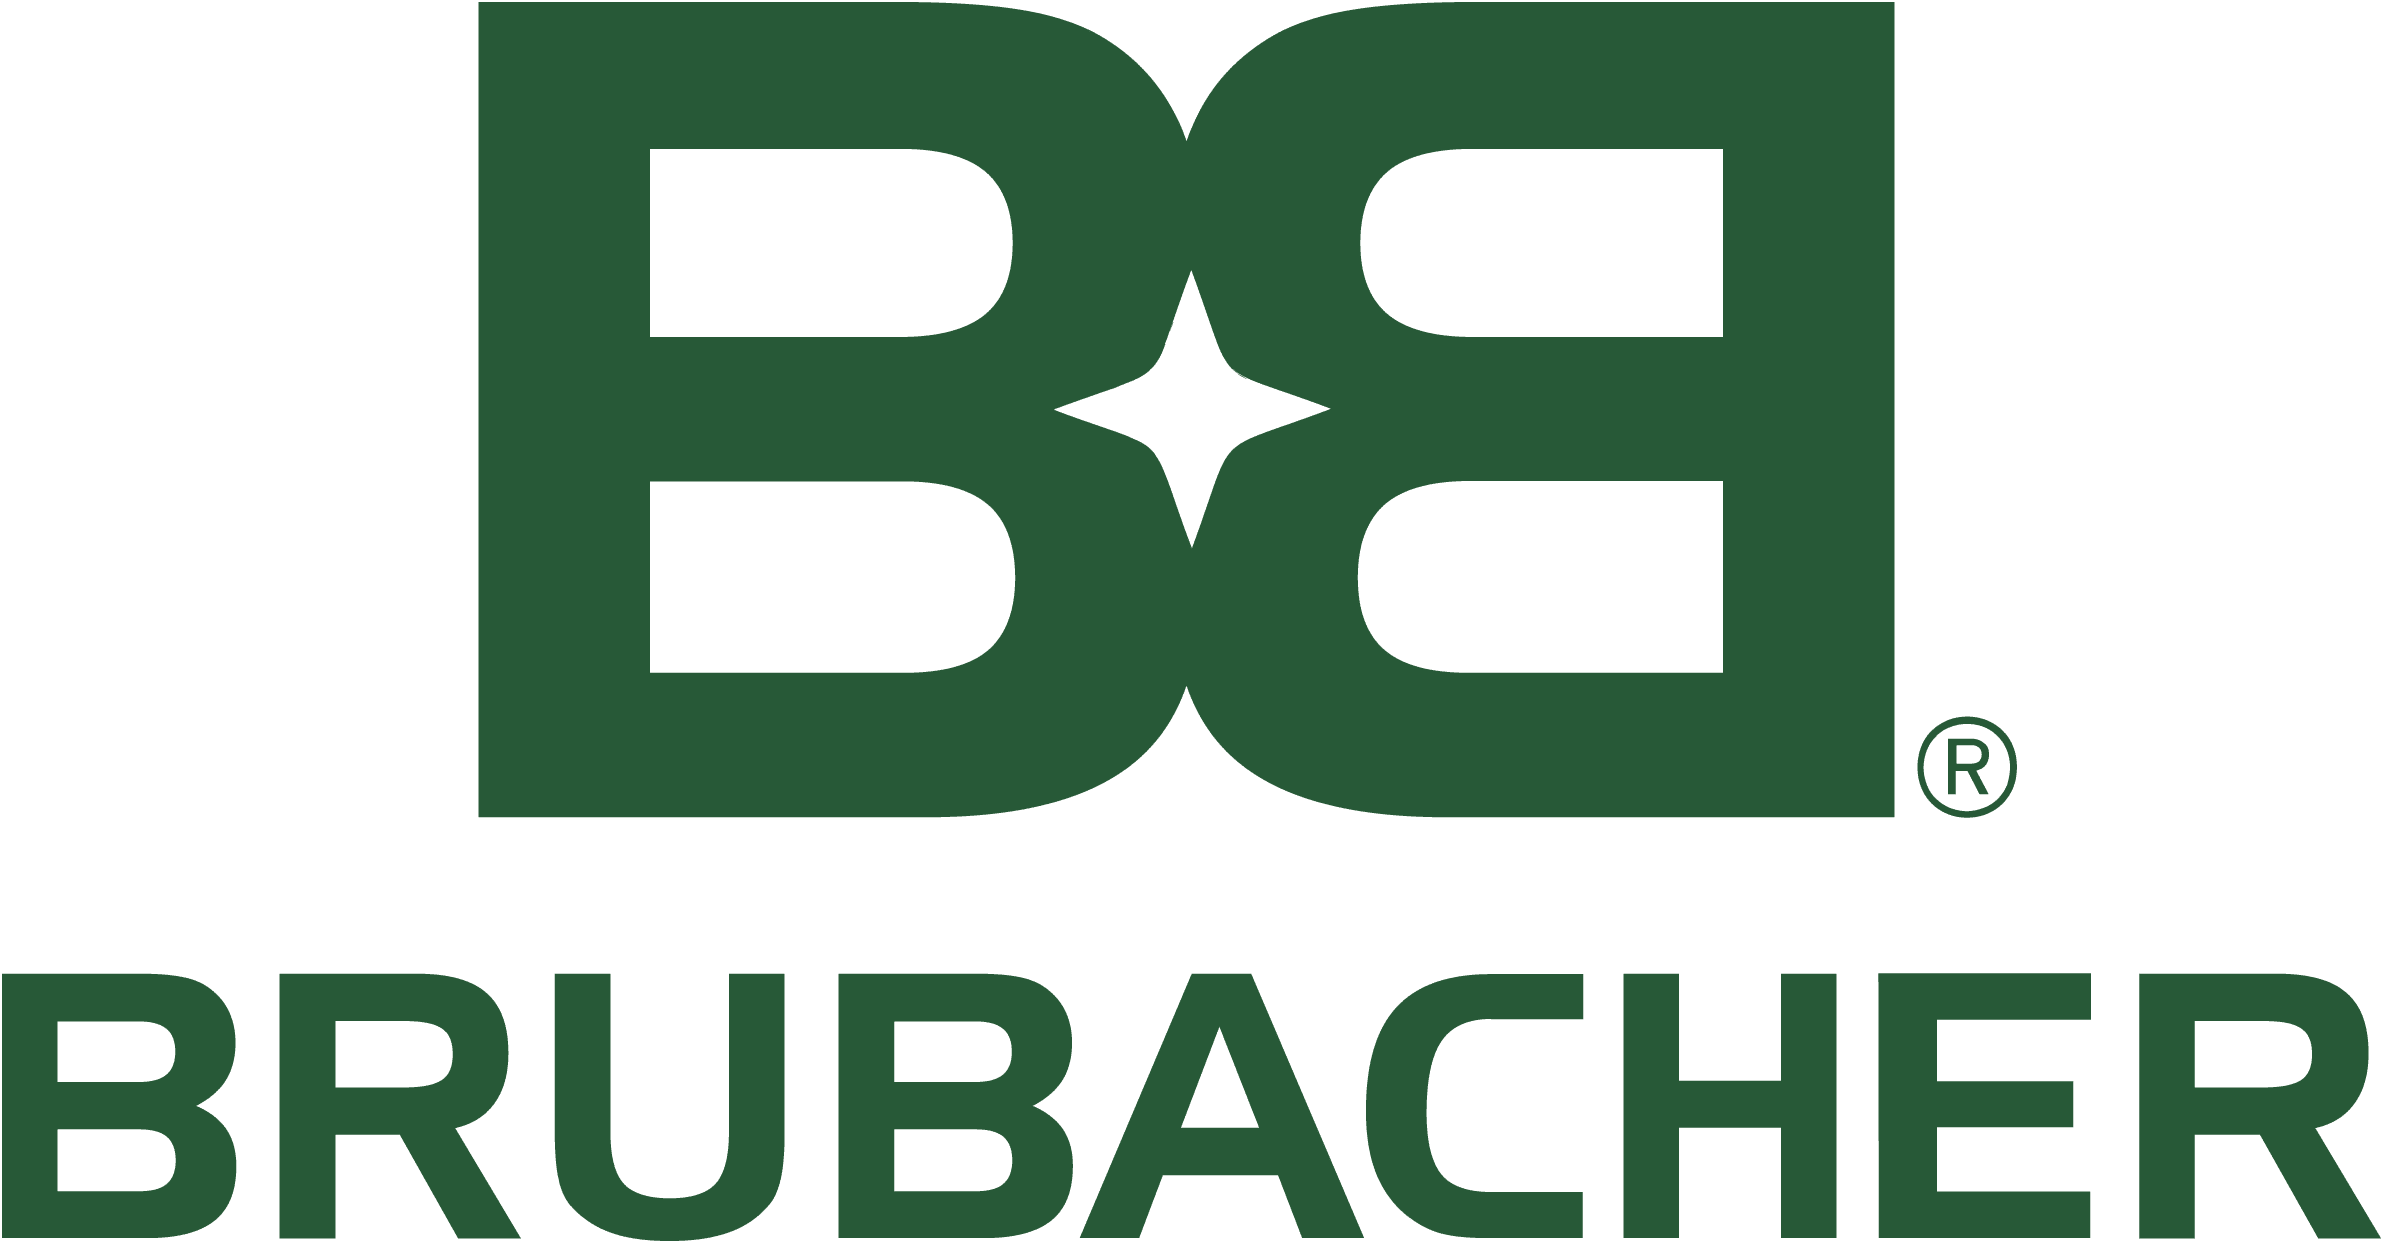 Brubaker Excavating logo
